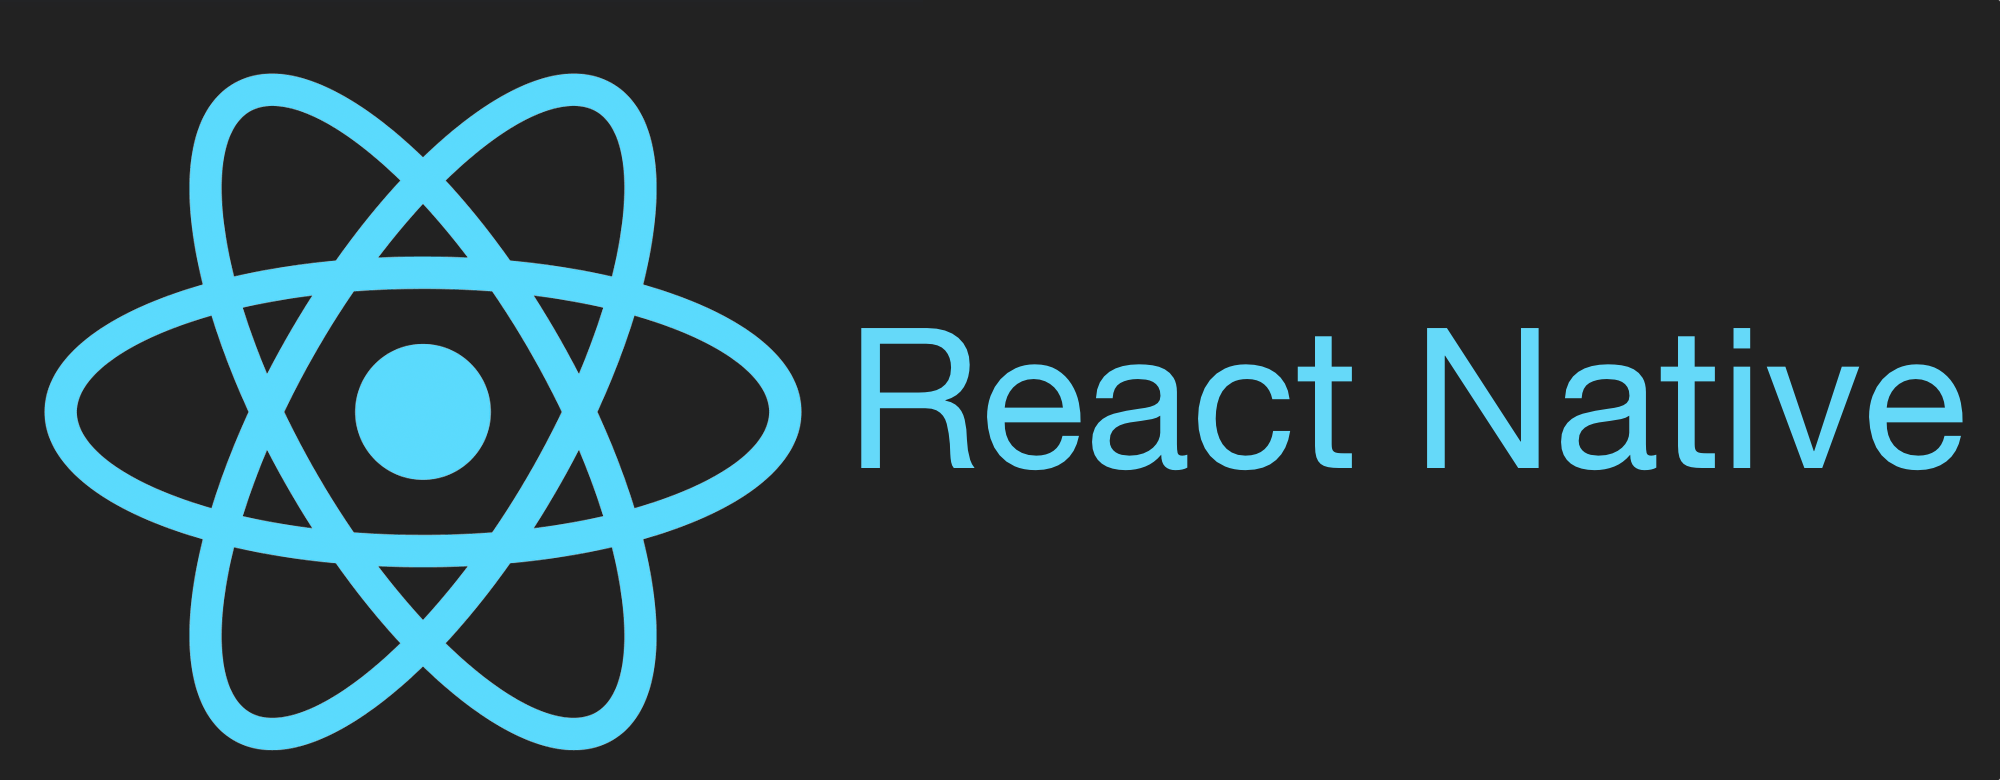 Реакт натив. React native. React логотип. React native лого. React and React native.